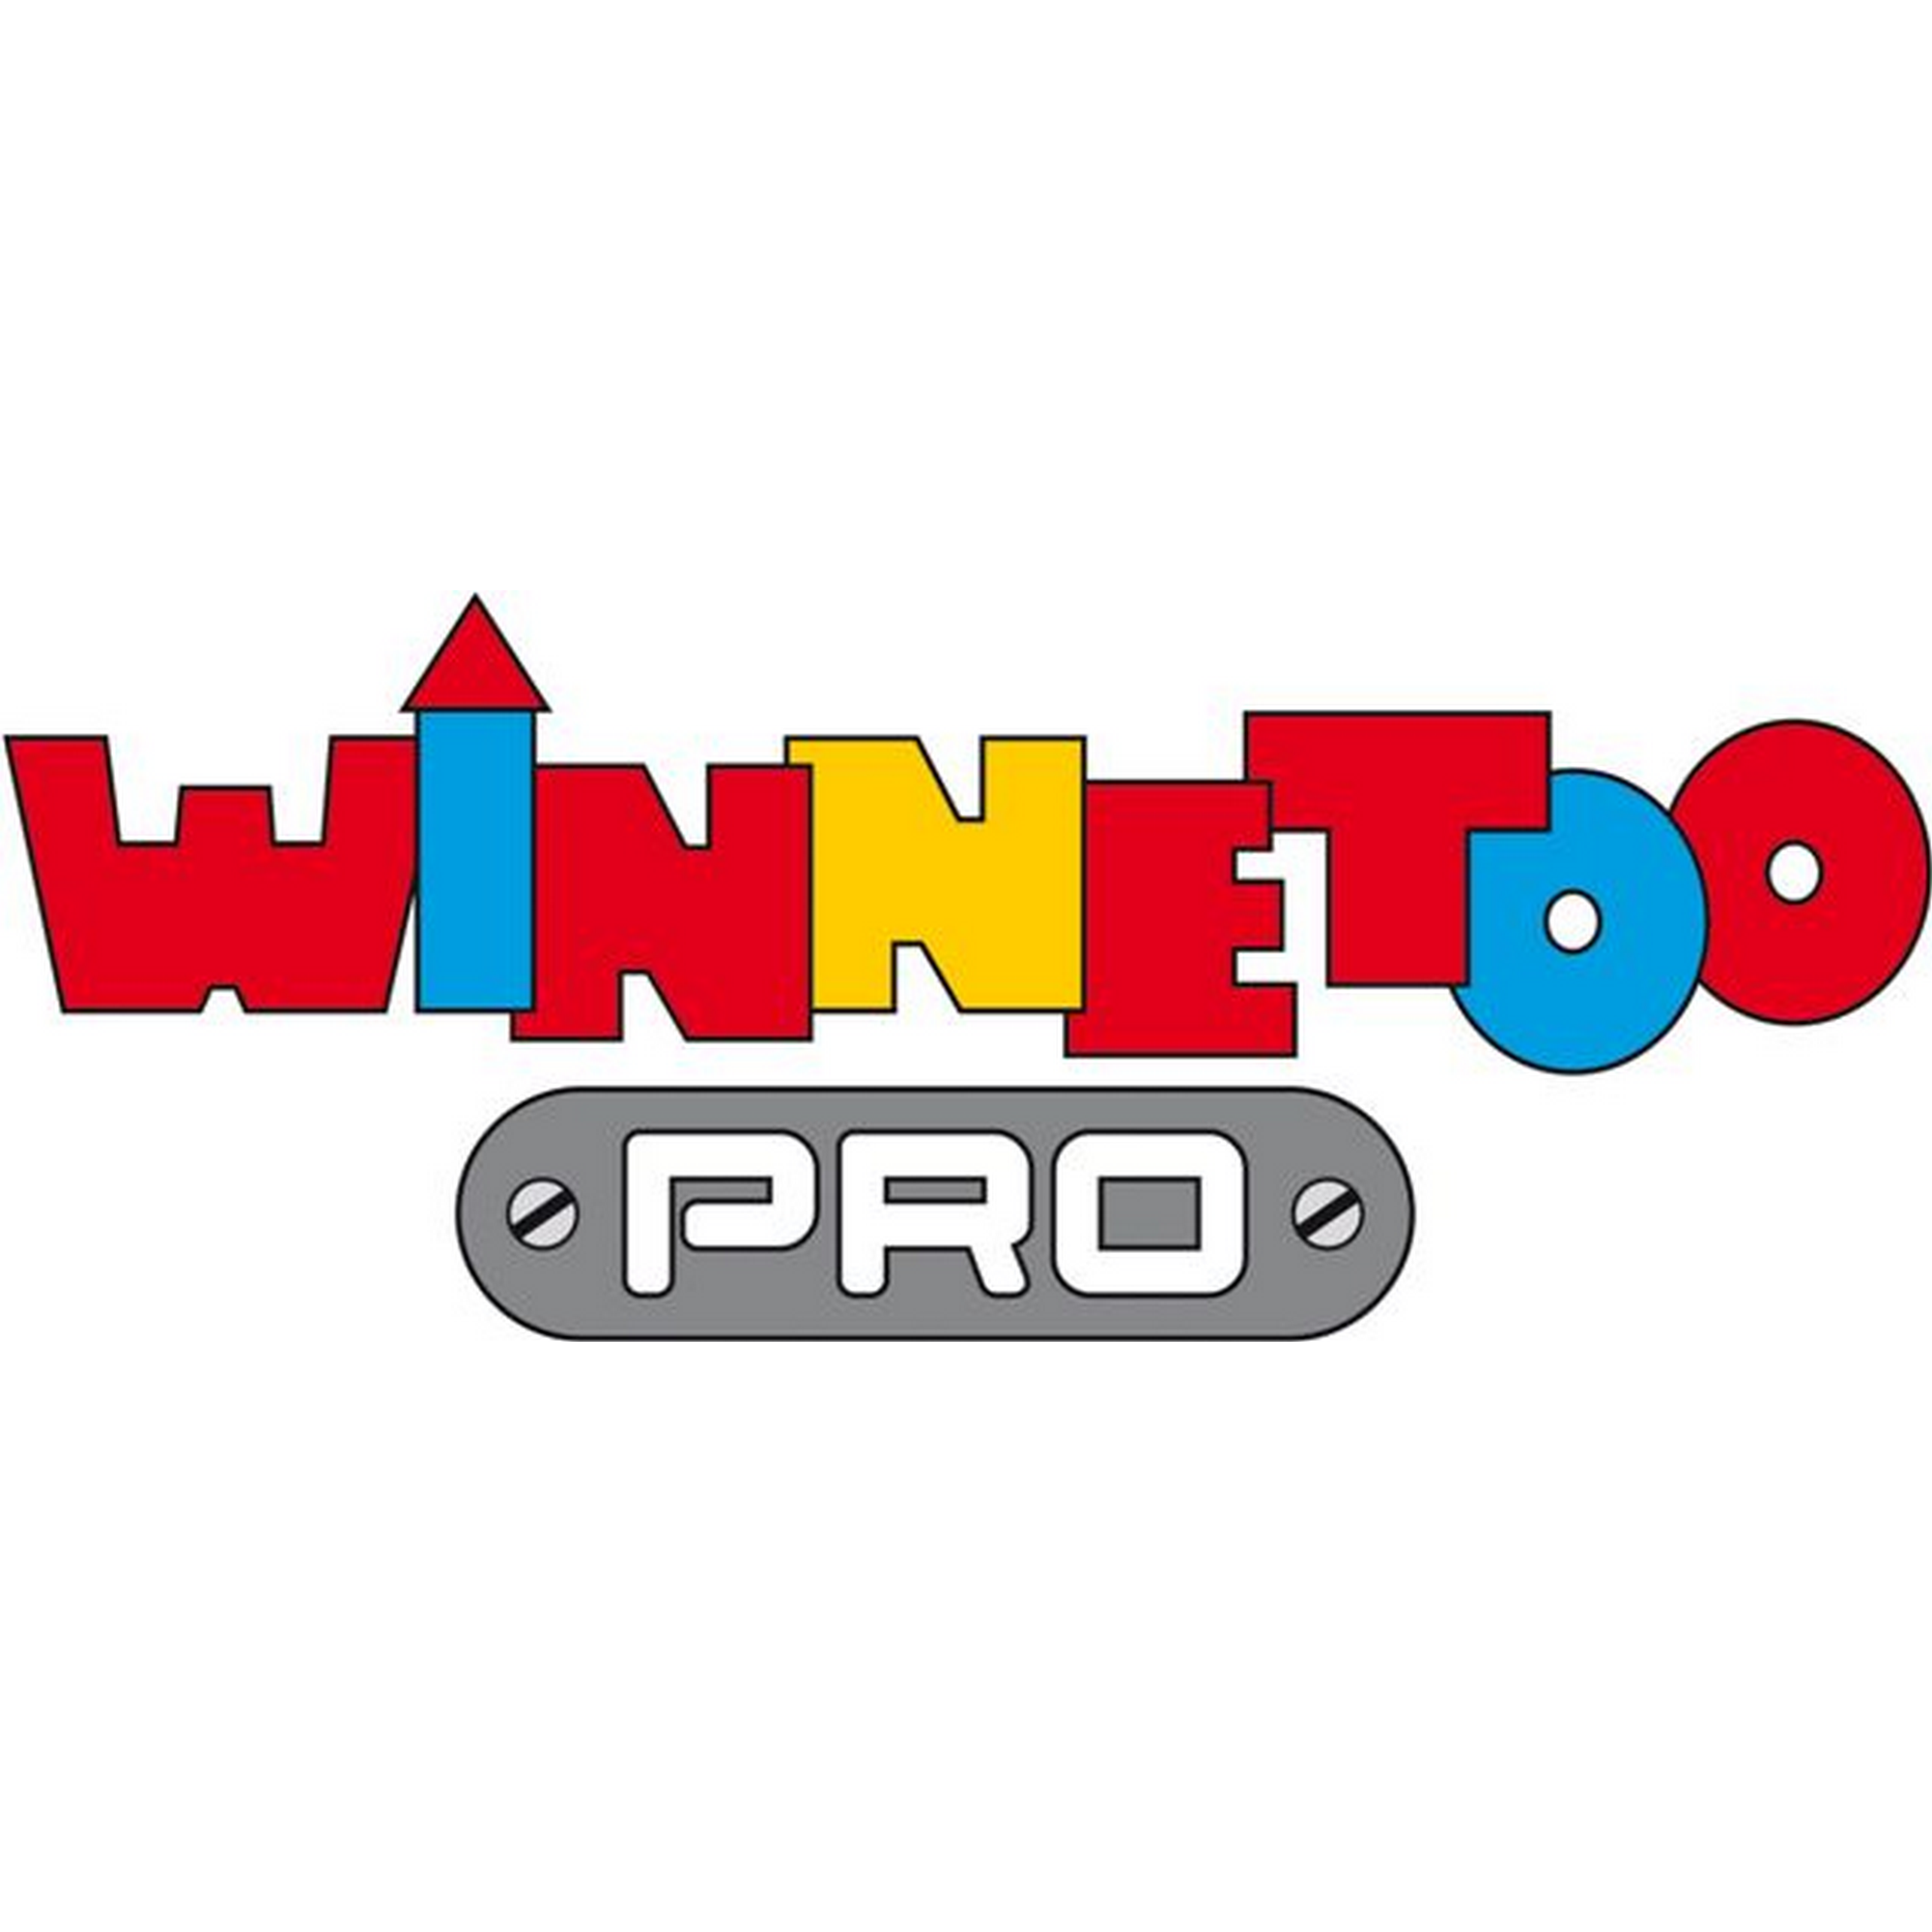 Kletterwand 'Winnetoo Pro' 118 x 80 x 2 cm, für Brücke oben + product picture